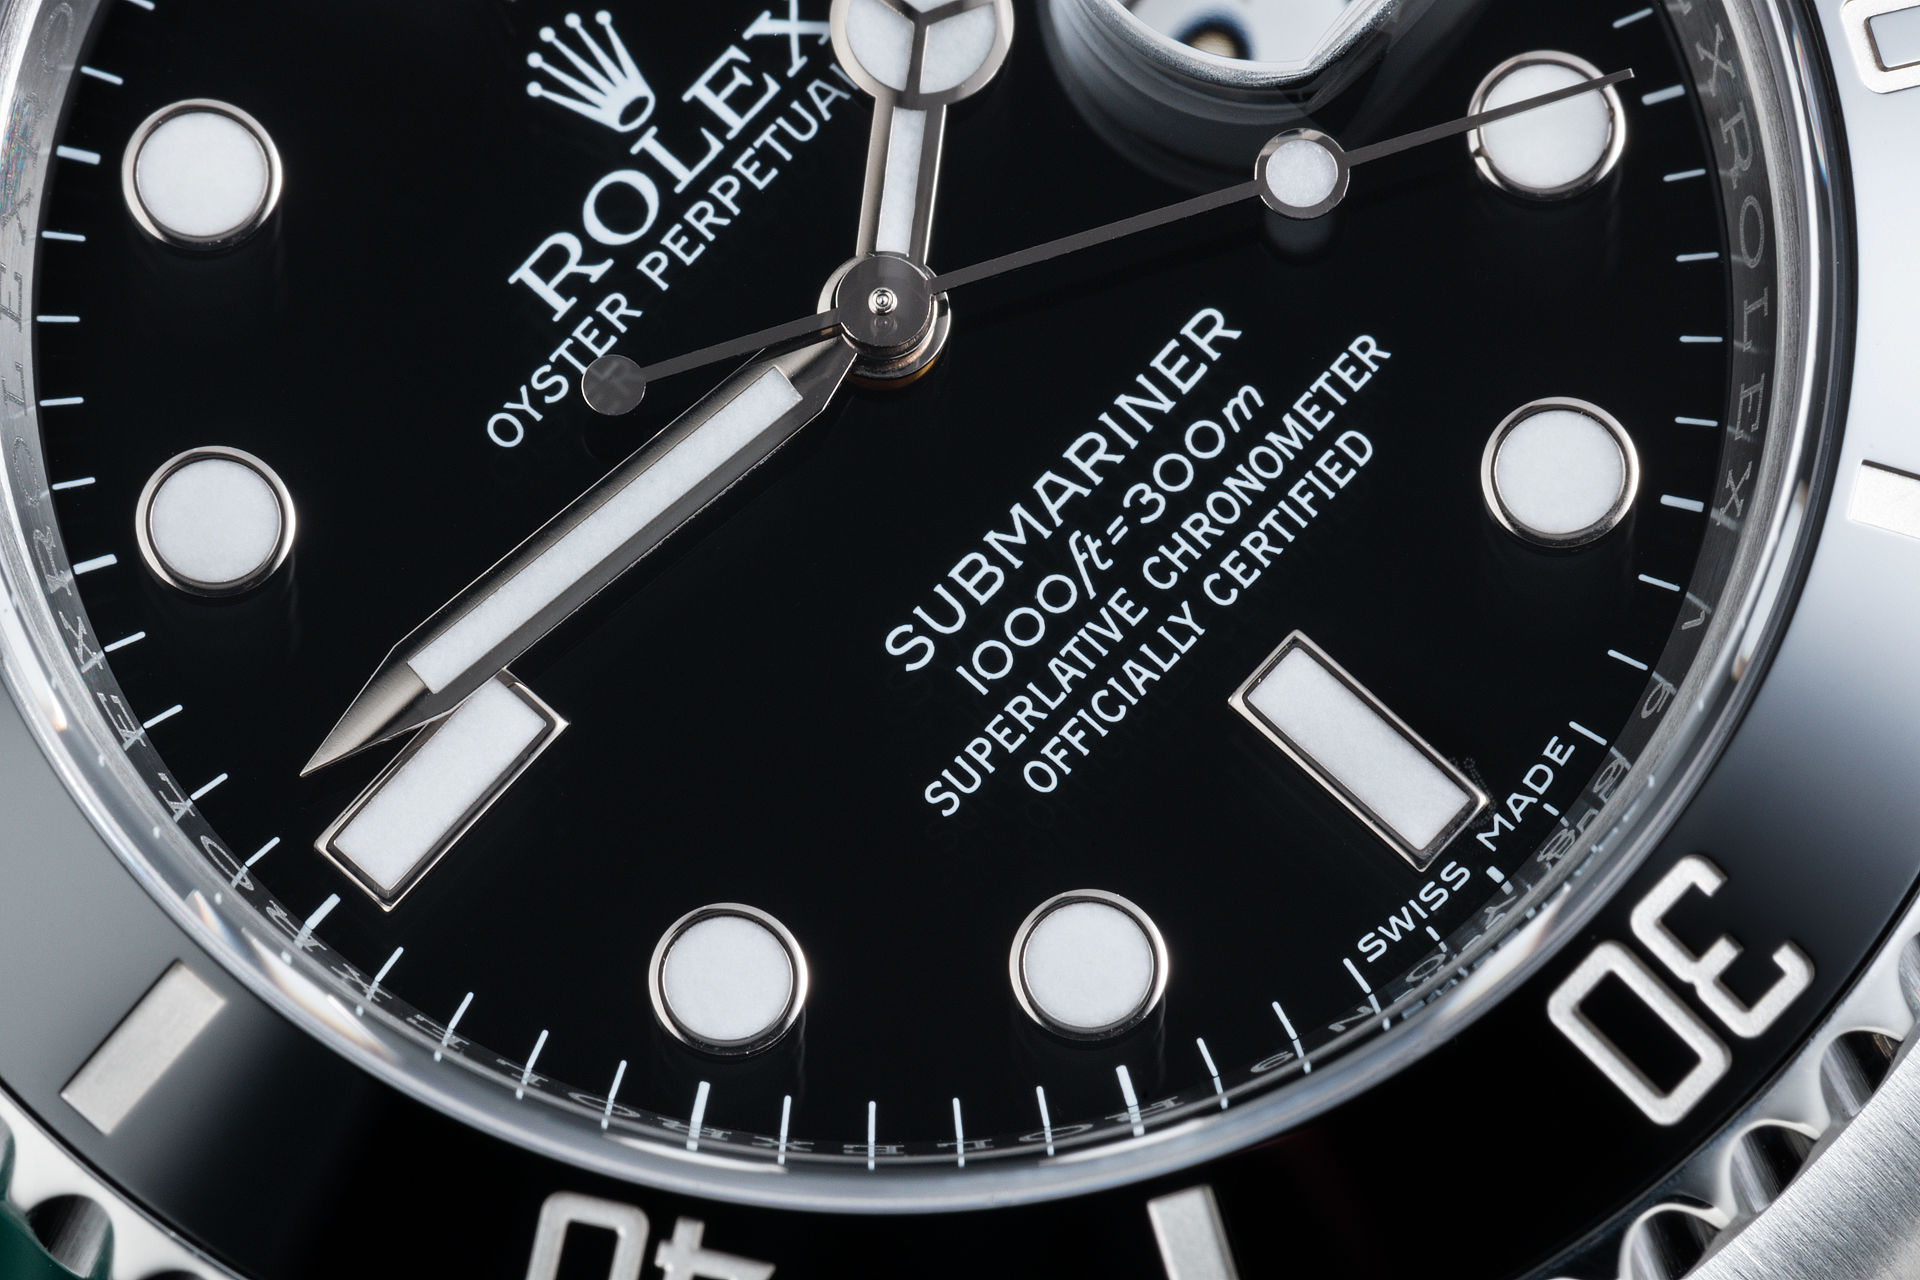 ref 116610LN | Rolex Warranty to 2021 | Rolex Submariner Date